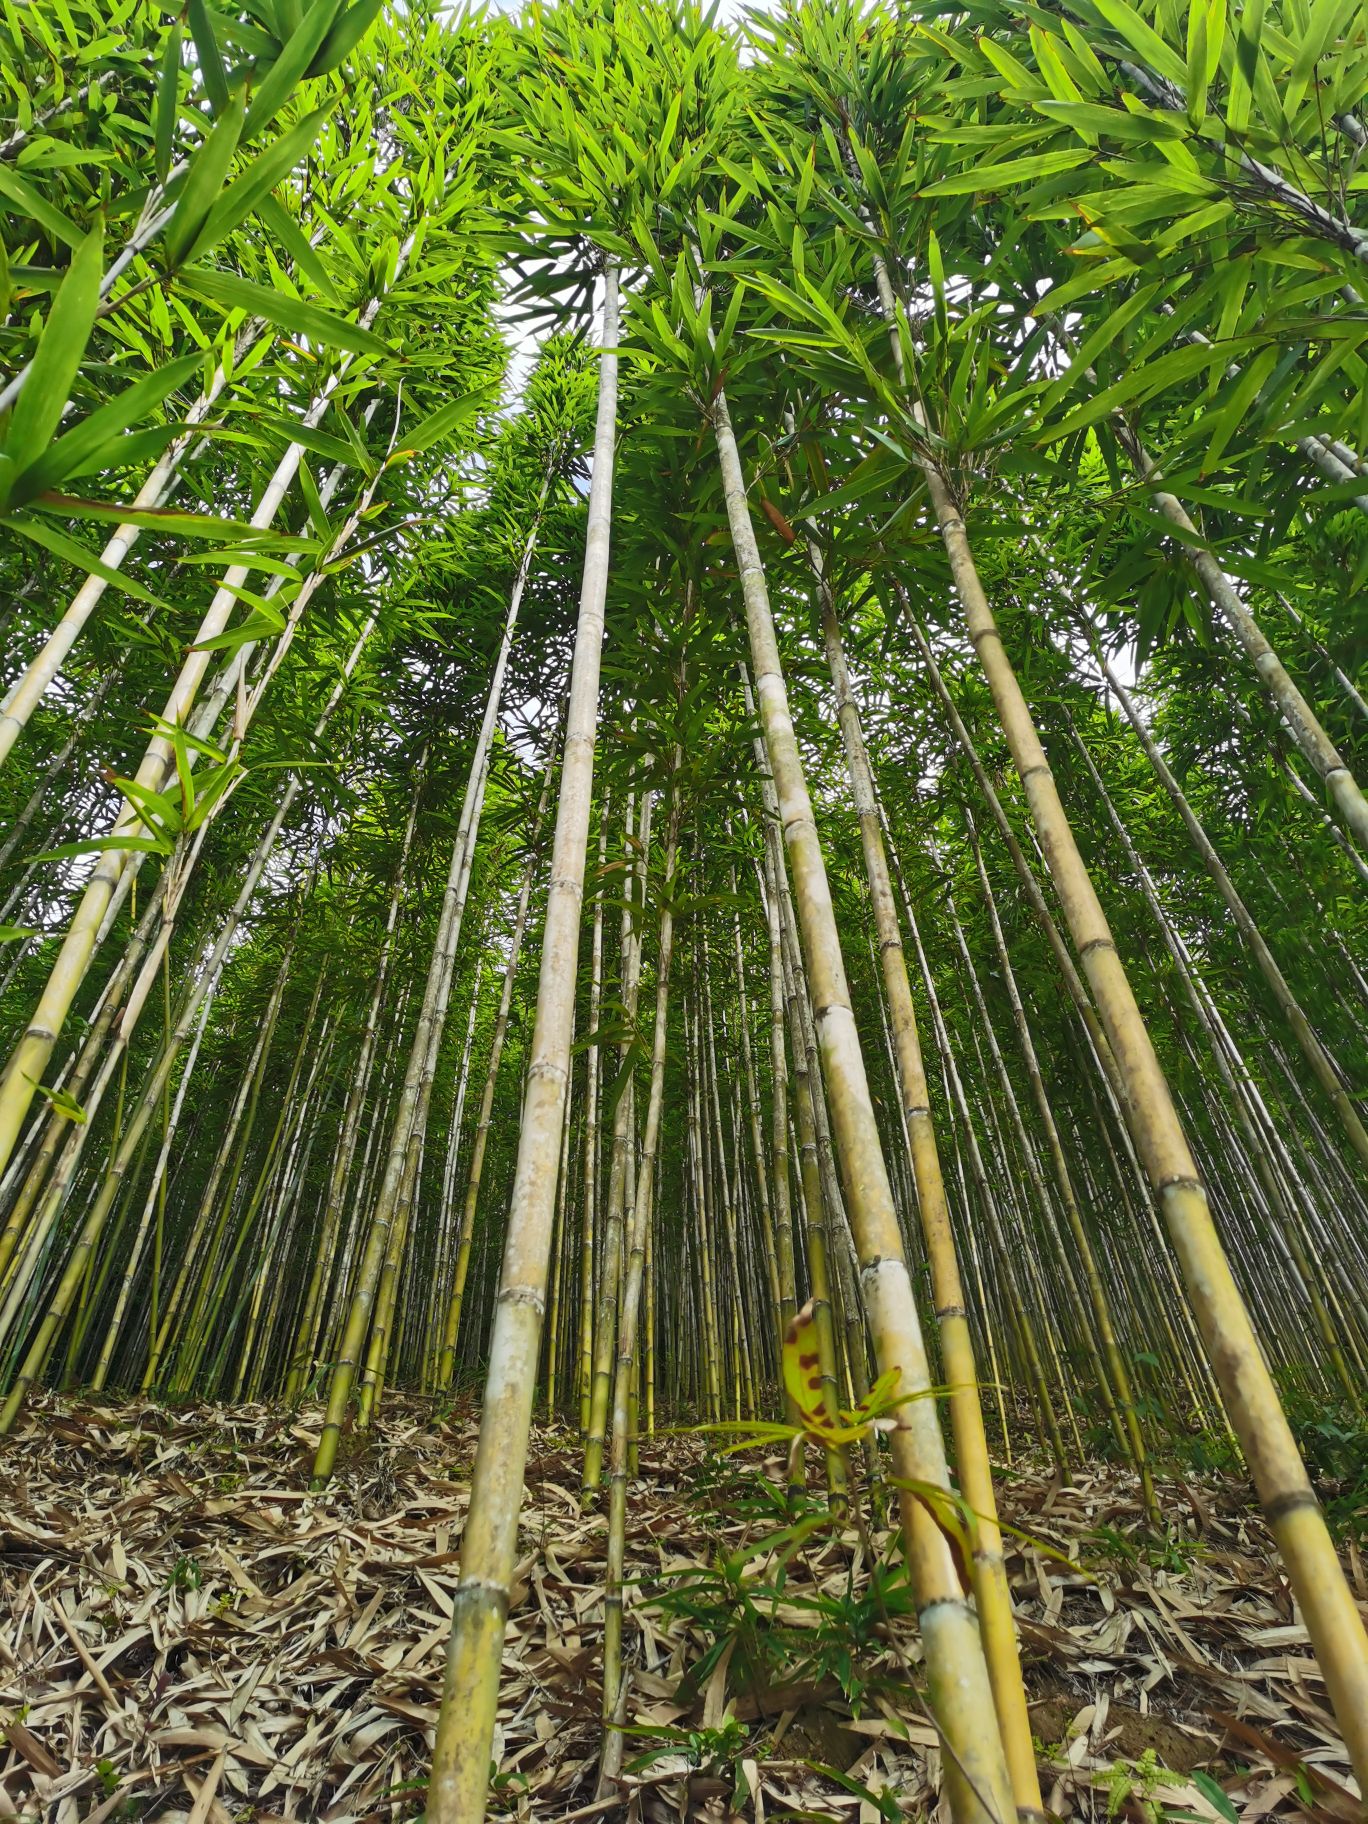 Tyczki bambusowe w naturalnym środowisku.